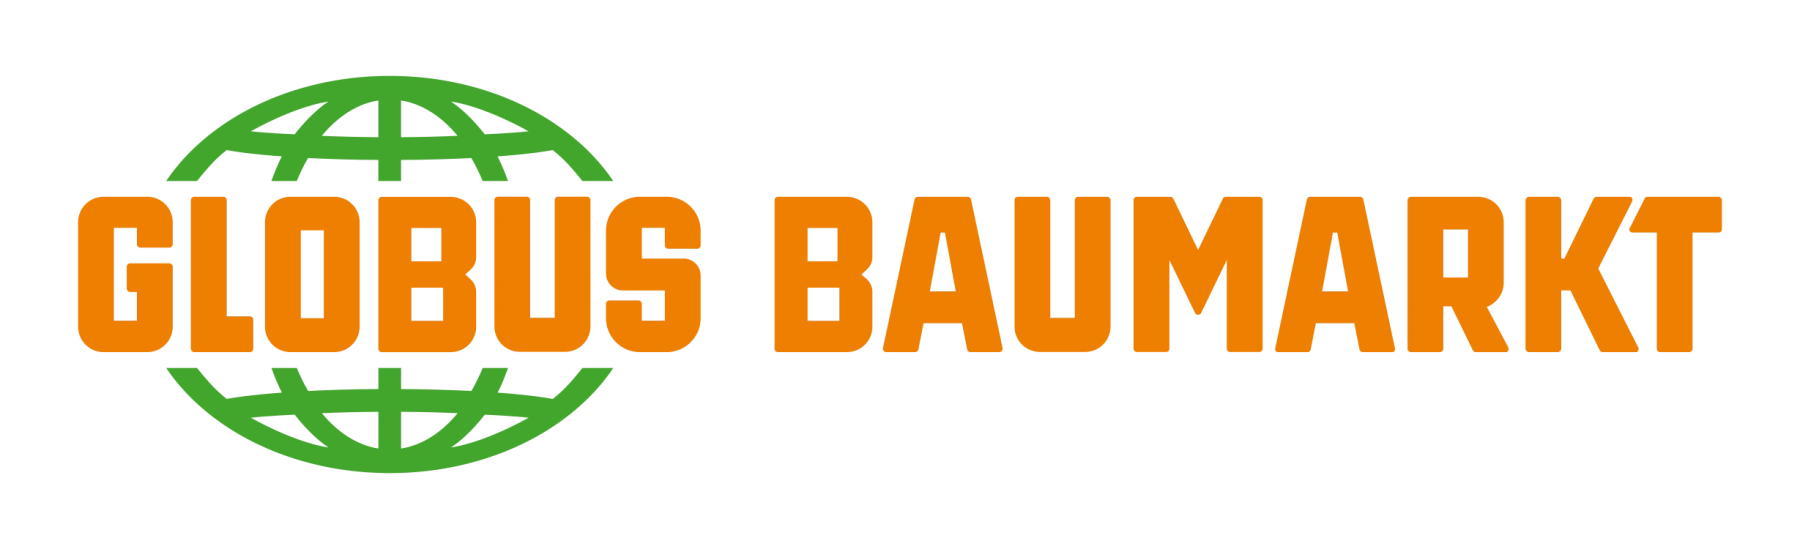 1_Globus_Baumarkt_Logo_digital_wide_RGB